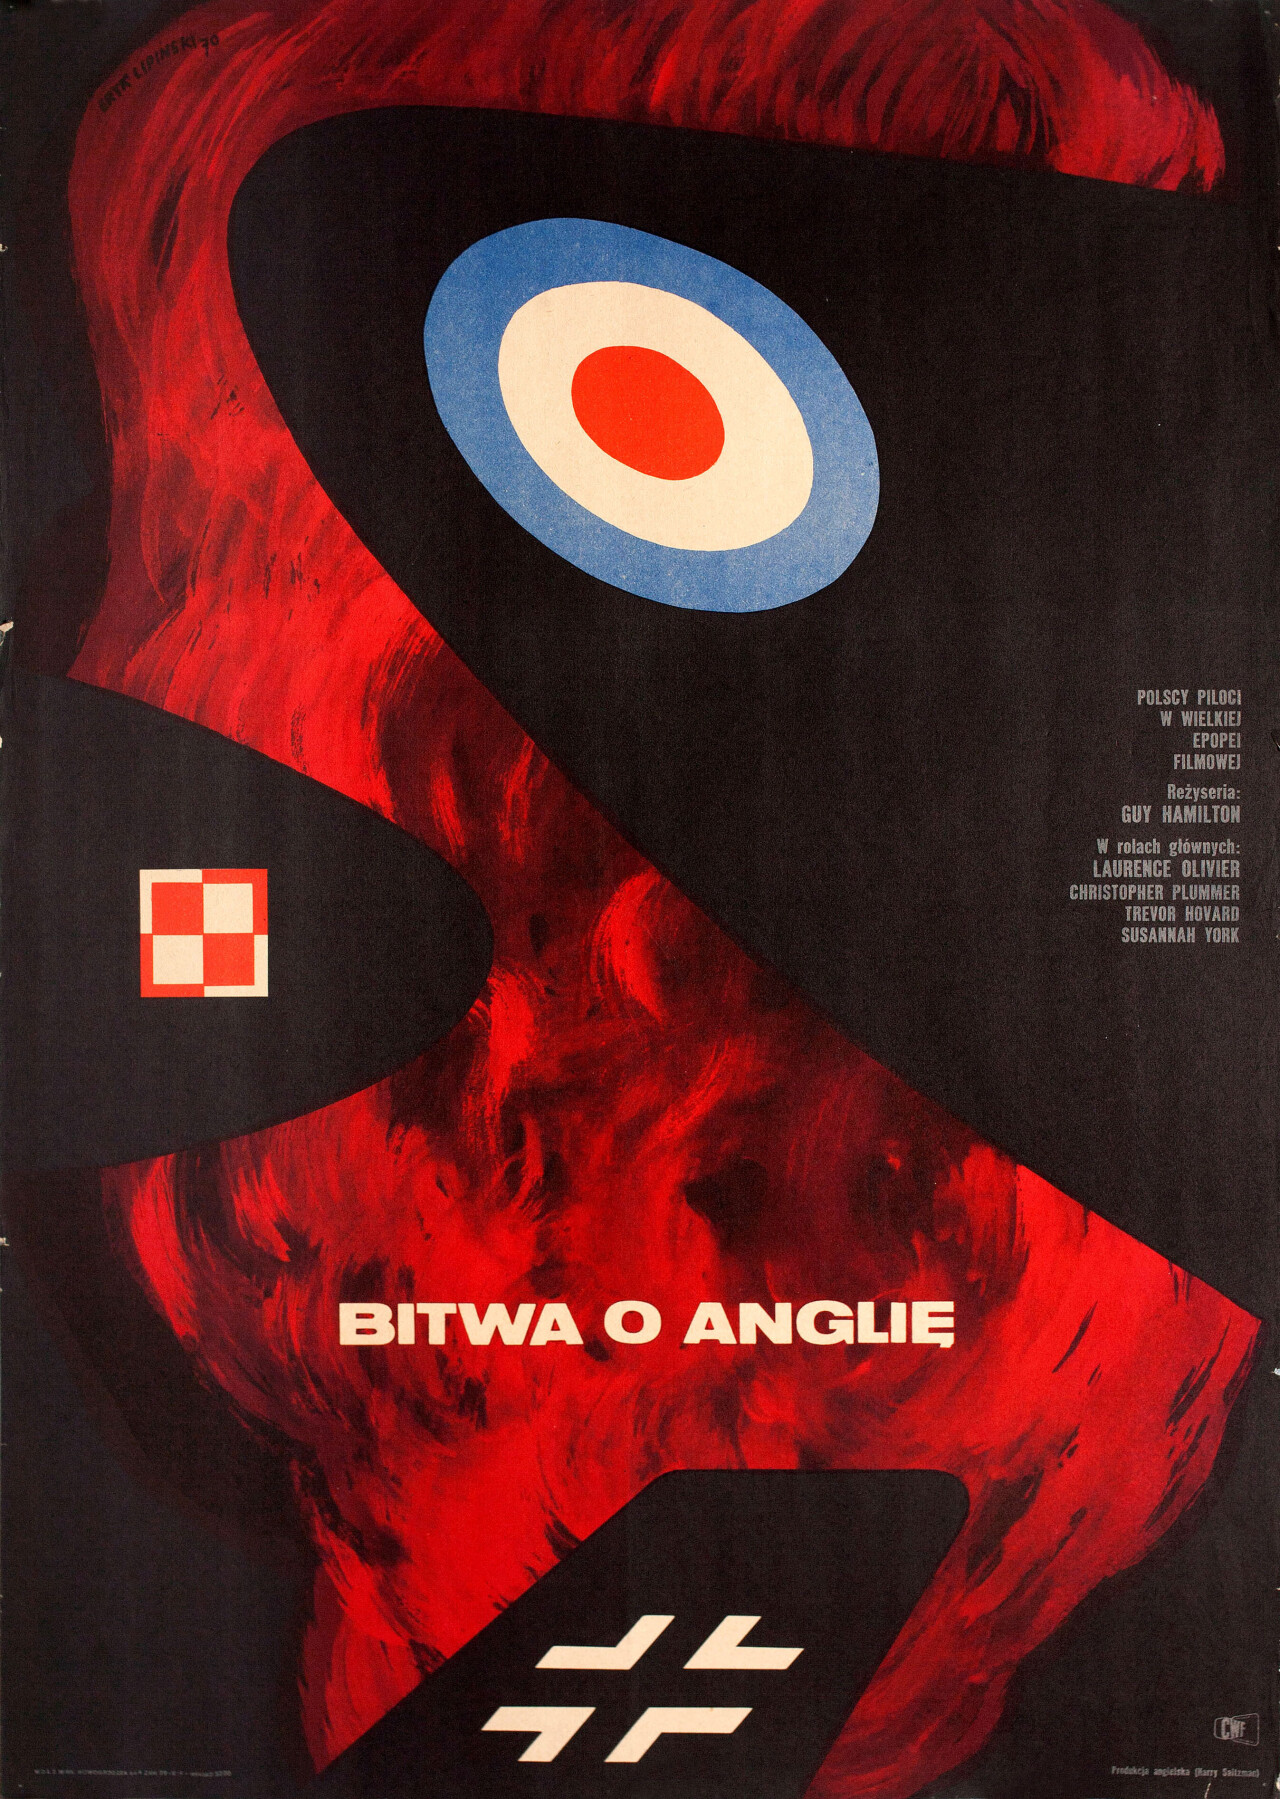 Битва за Англию (Battle of Britain, 1969), режиссёр Гай Хэмилтон, минималистичный постер к фильму (Польша, 1969 год), автор Эрик Липински